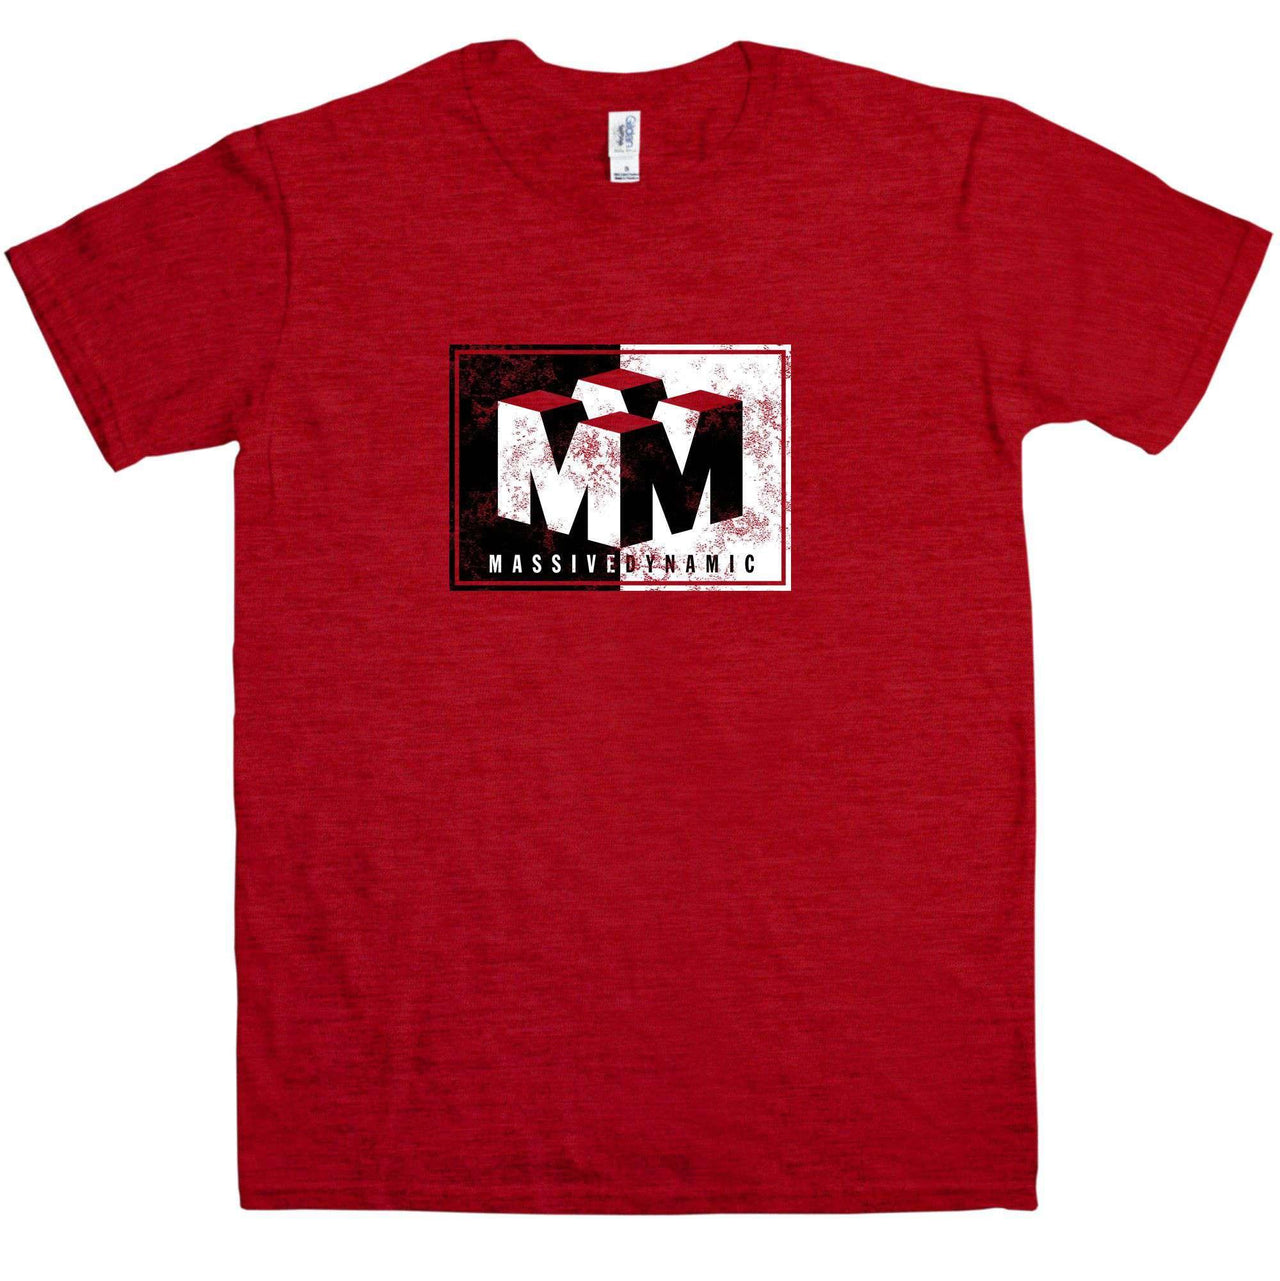 Massive Dynamic T-Shirt For Men, Inspired By Fringe 8Ball